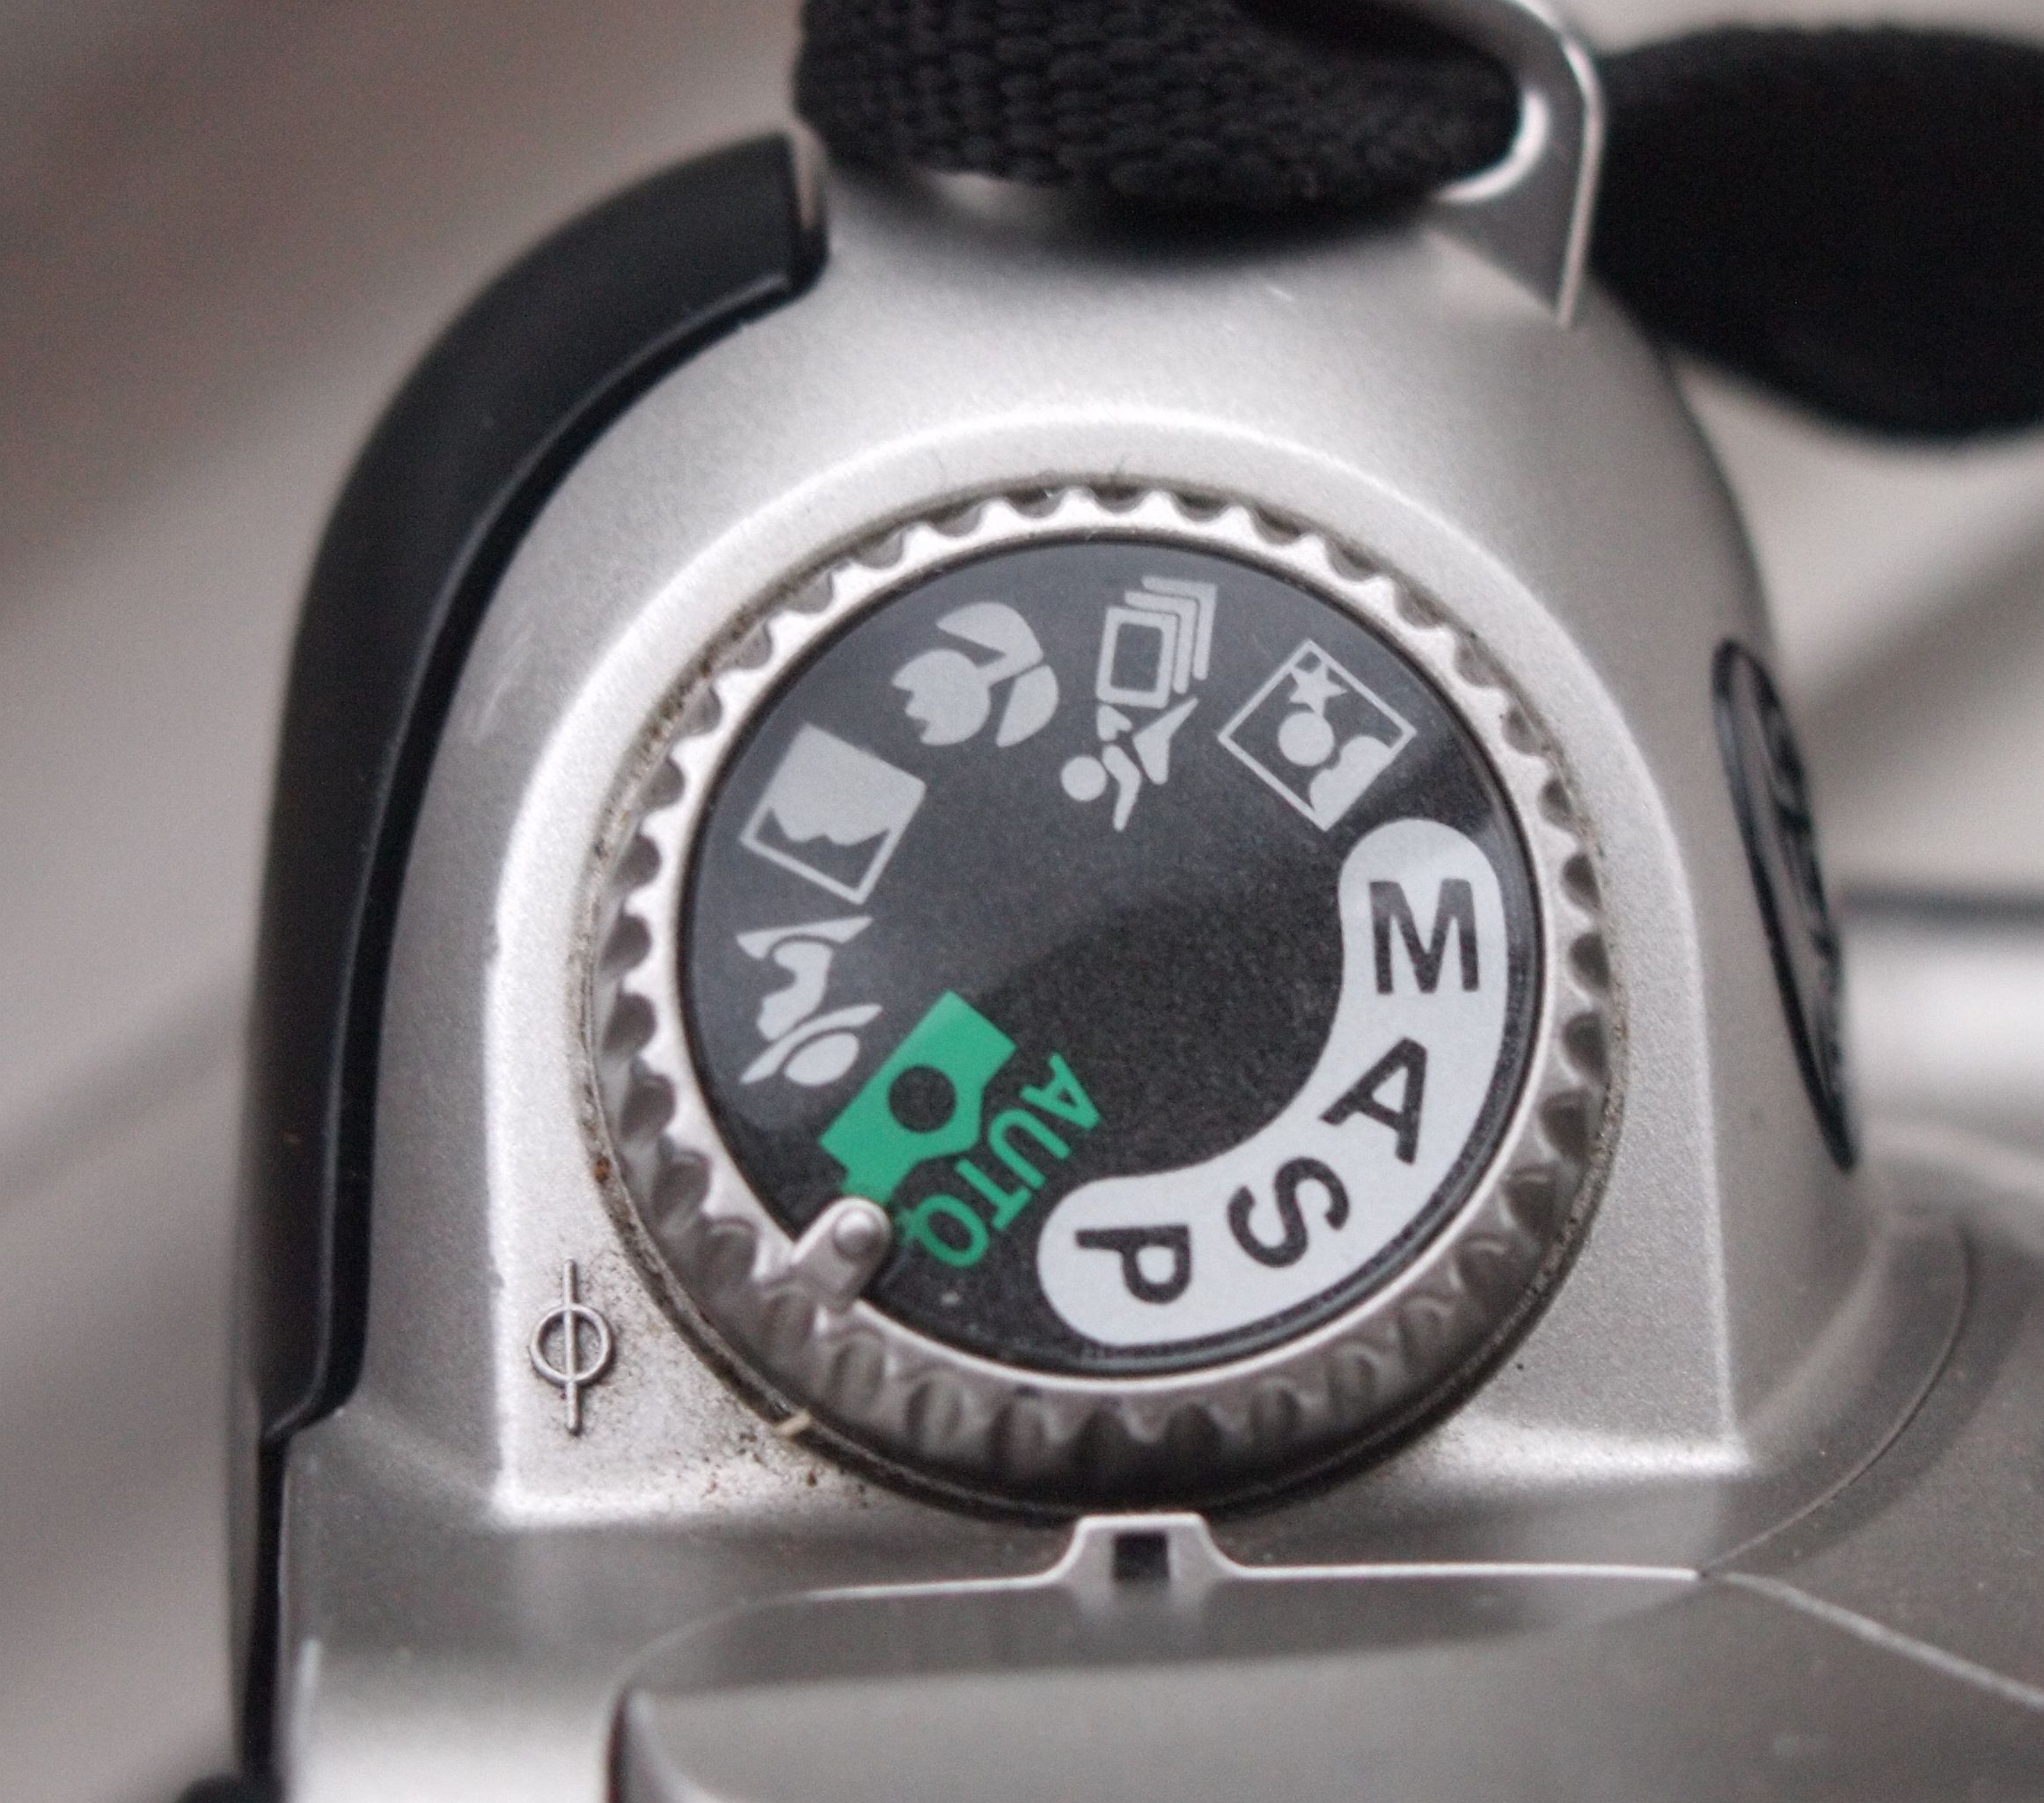 Exposure dial of Nikon F55